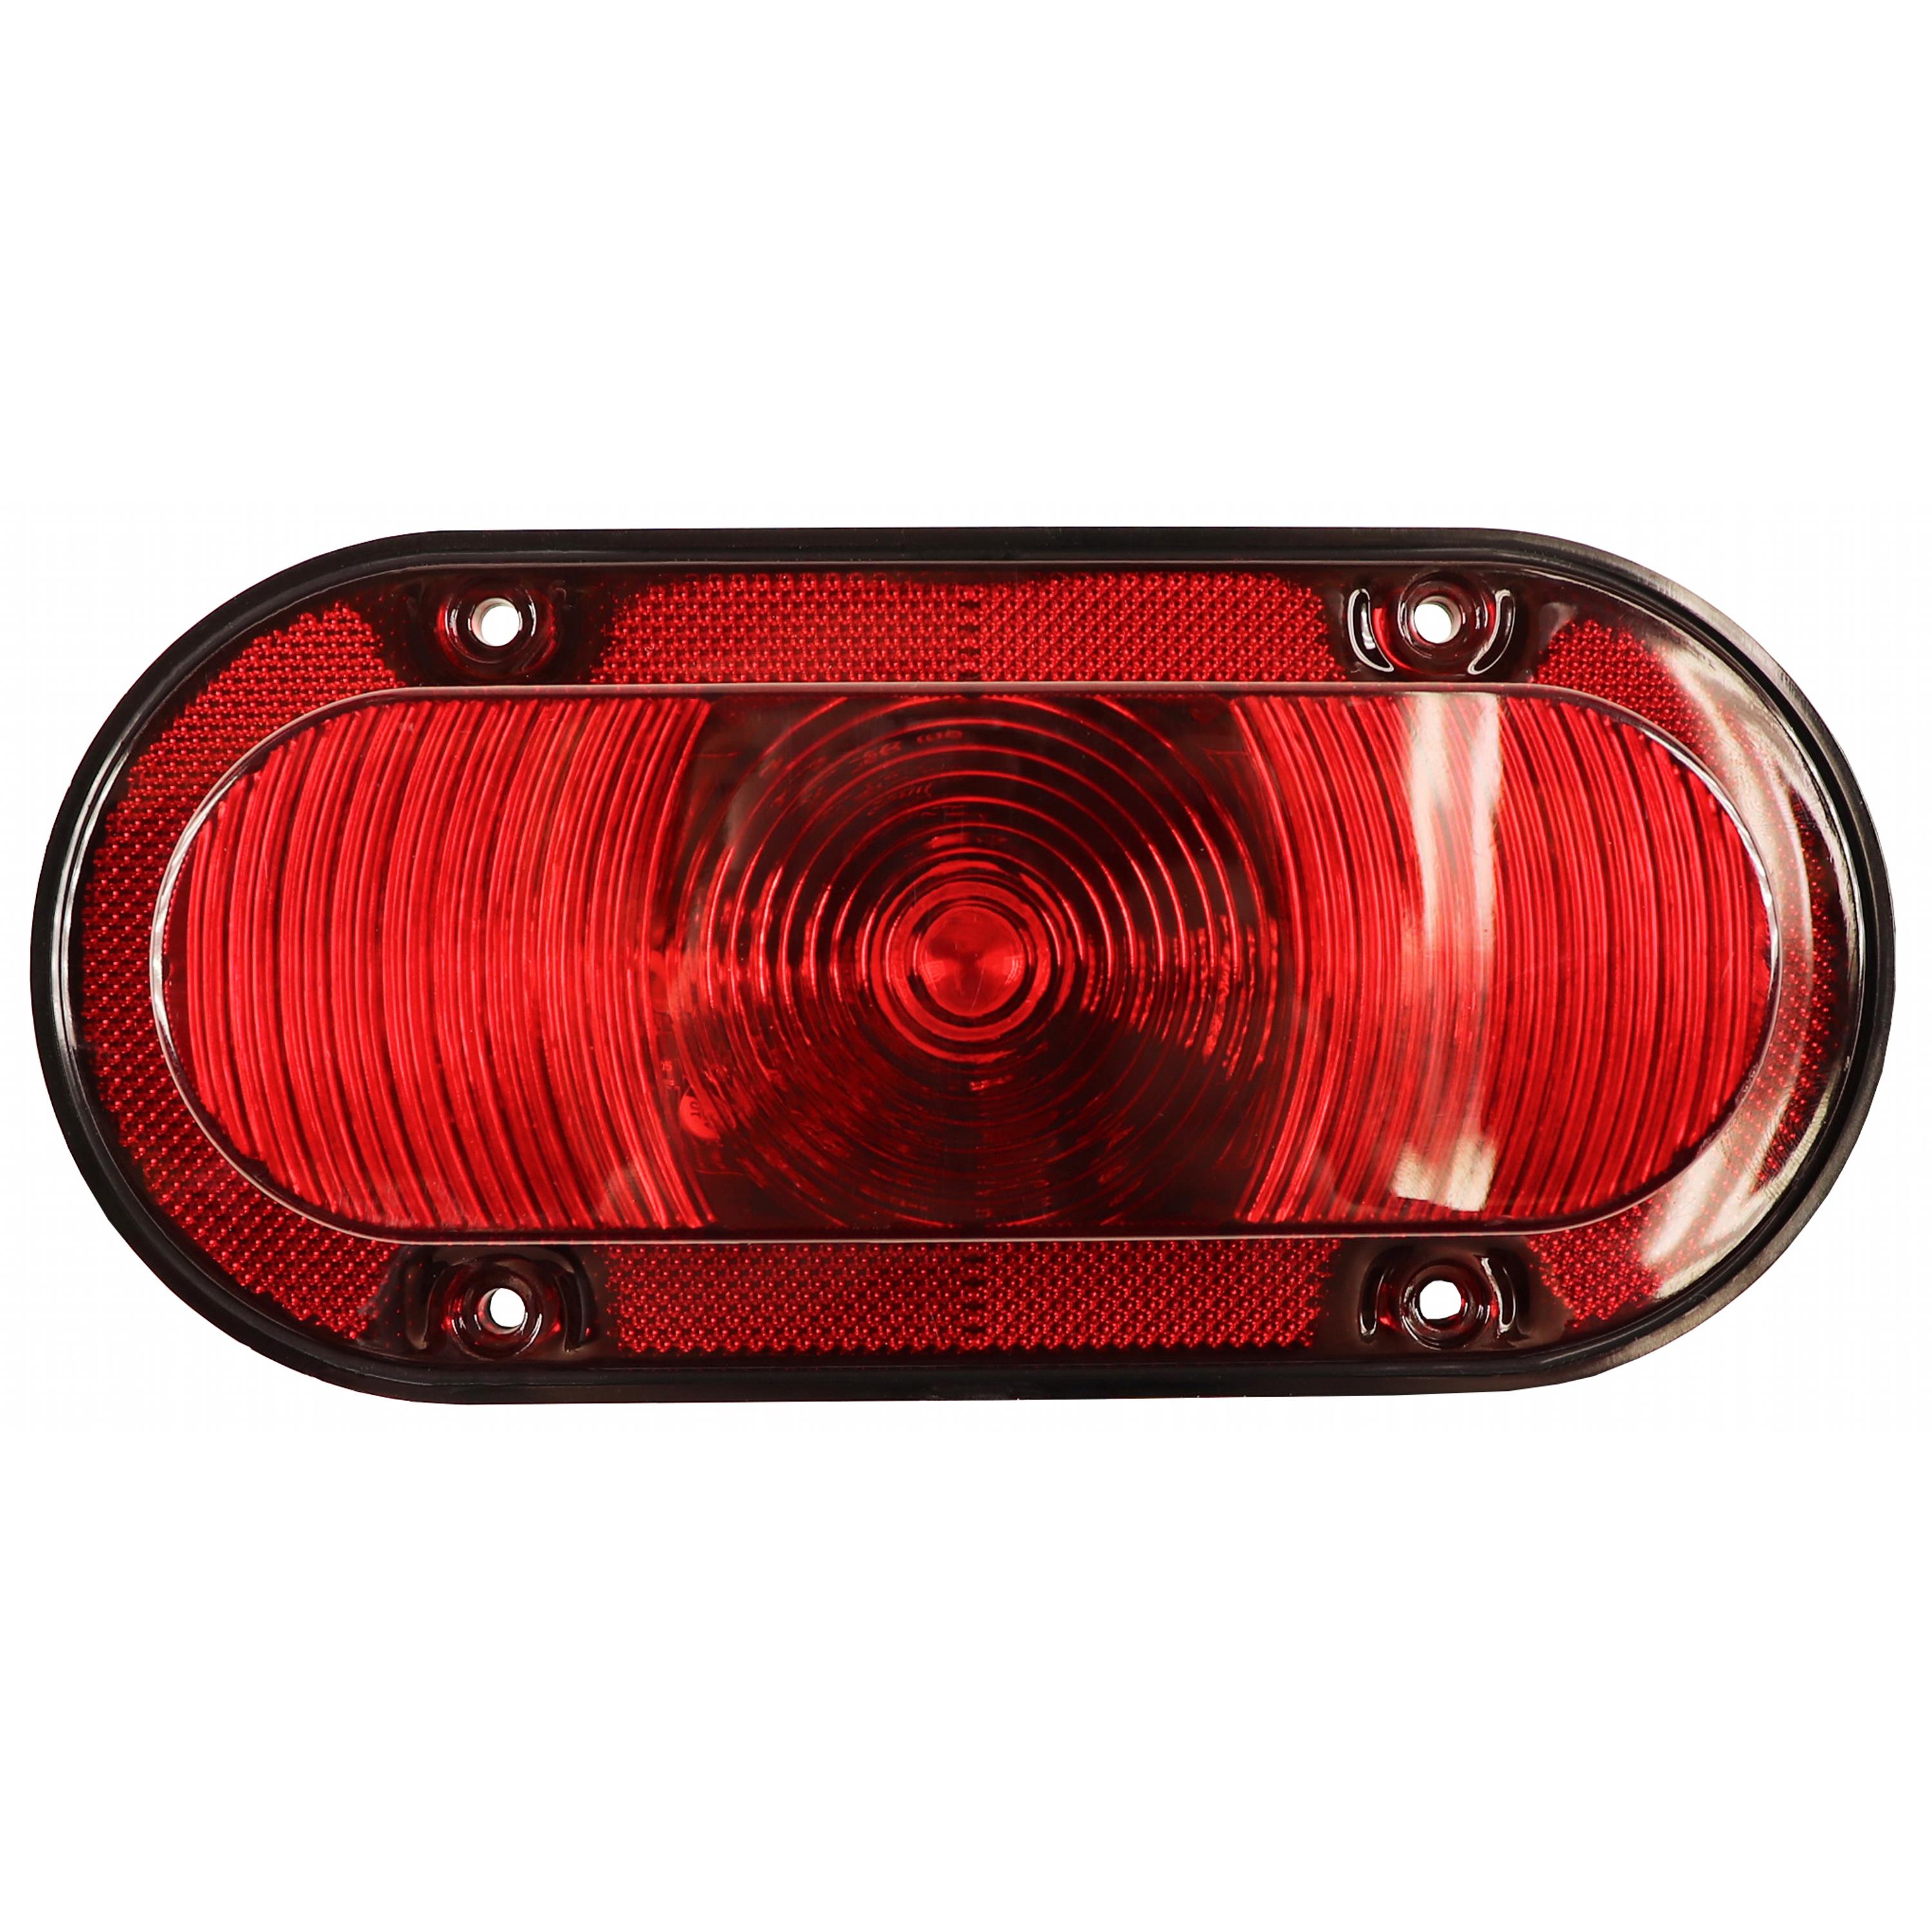 Bridgelux LED Red Warning Light